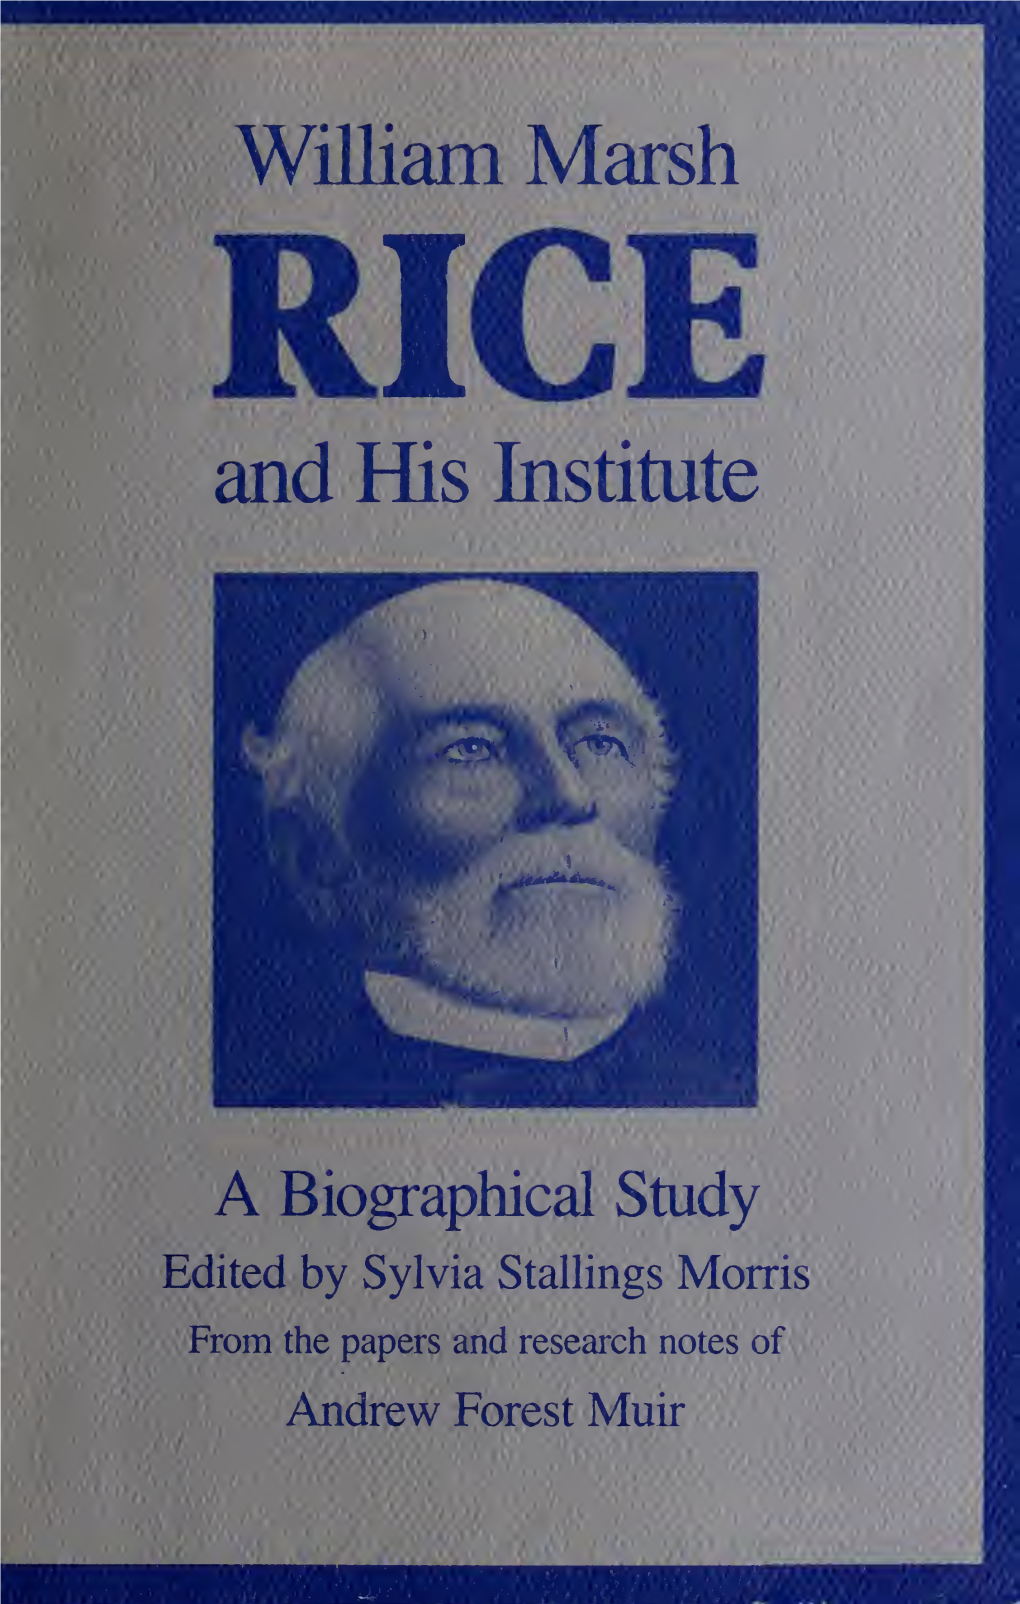 William Marsh RICE and His Institute